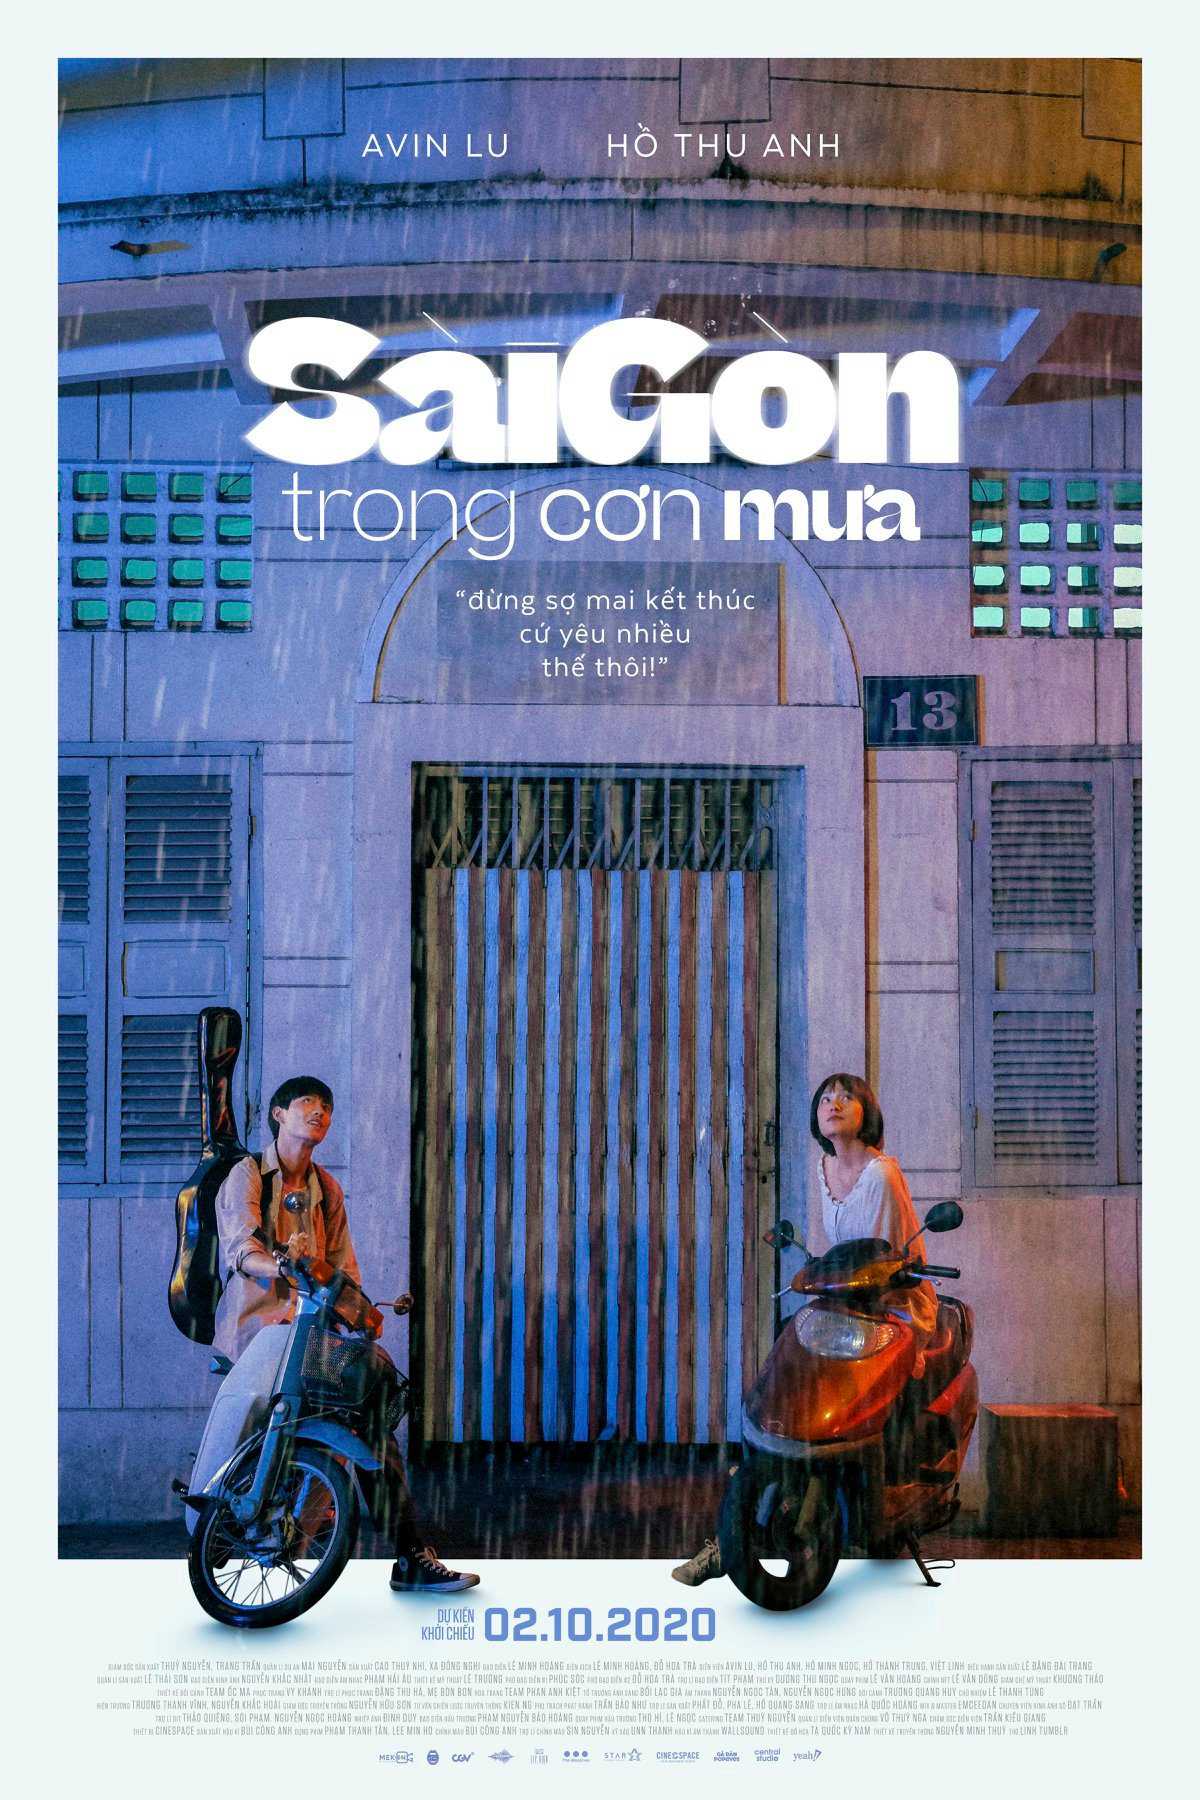 Sài Gòn trong cơn mưa - Sai Gon in the Rain